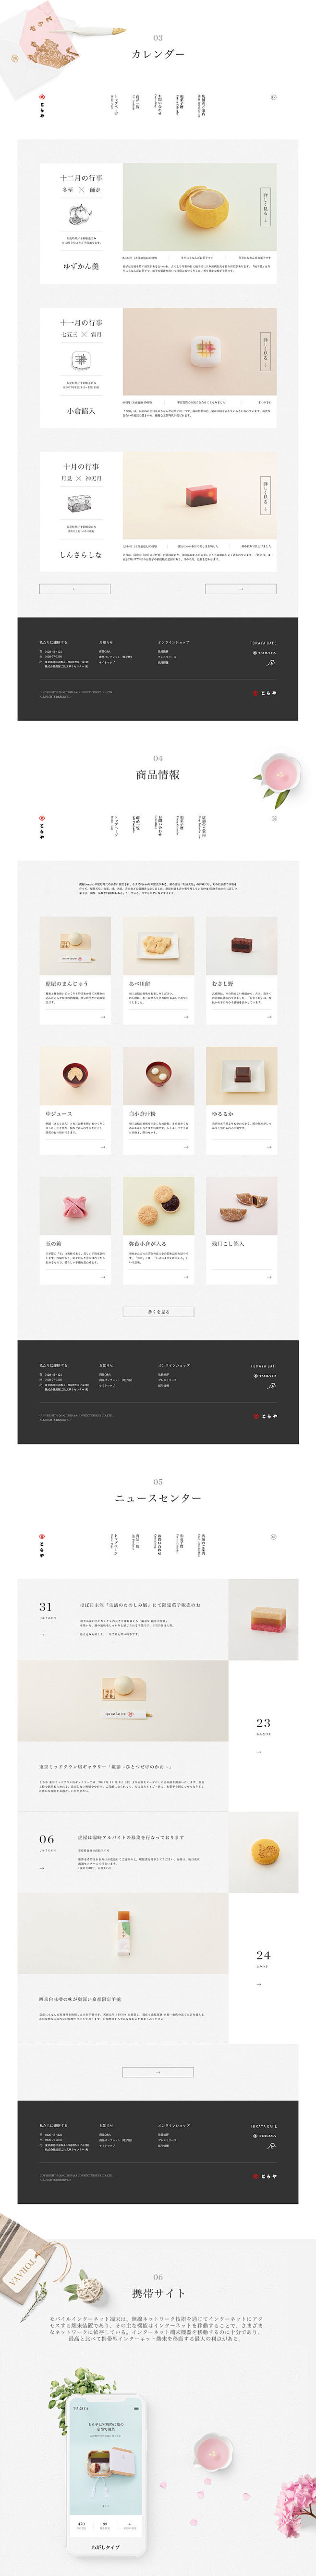 とらやの和菓子-日式网页设计/CHRIS...